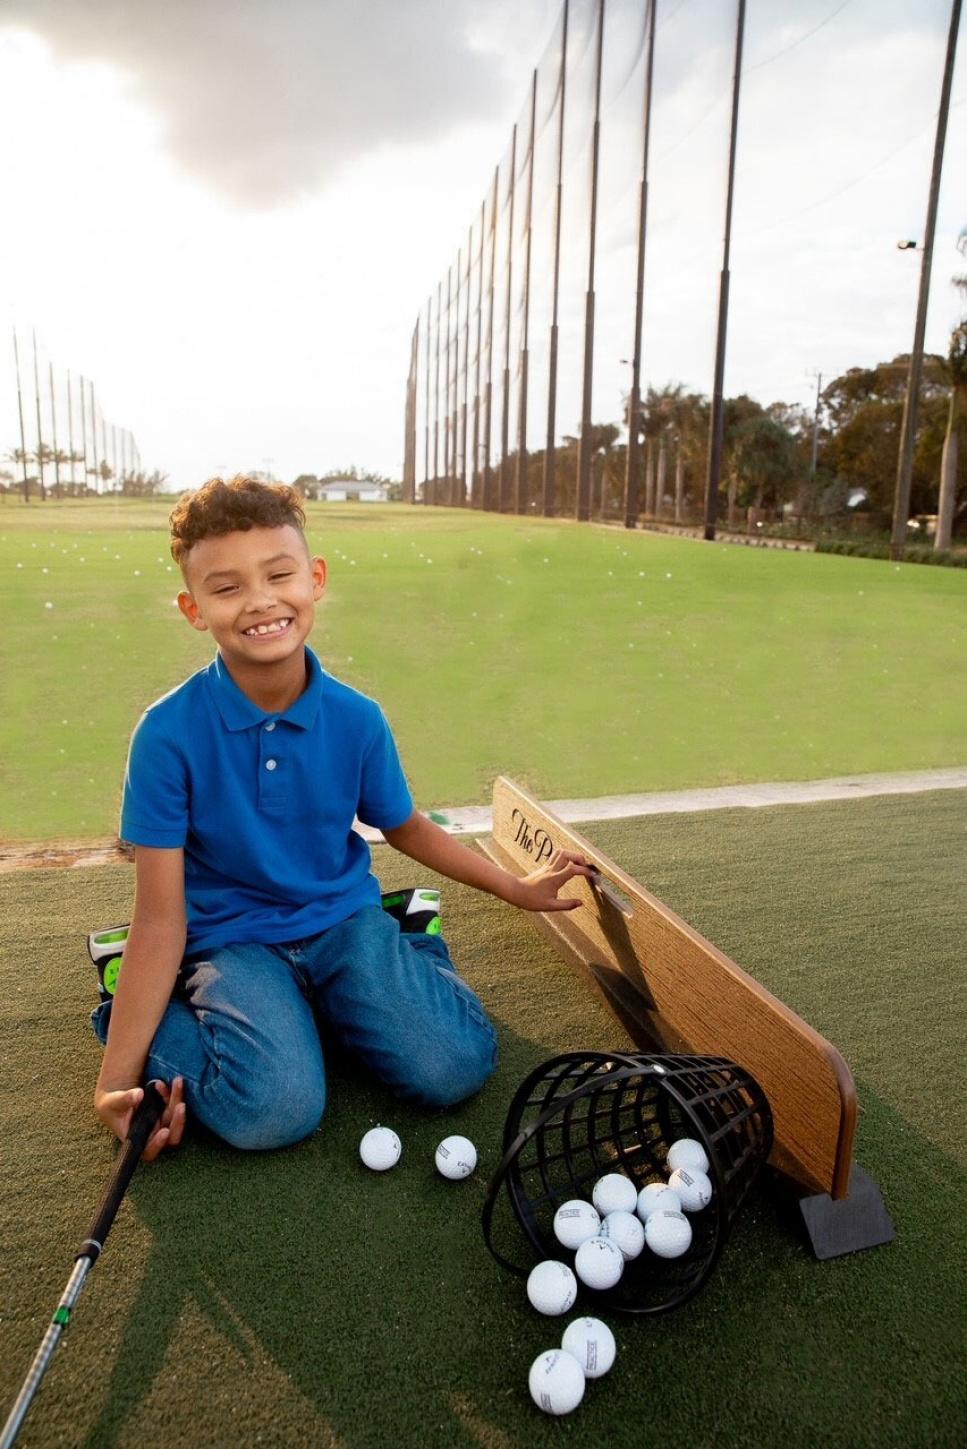 https://www.golfdigest.com/content/dam/images/golfdigest/fullset/2024/2/kid-enjoying-golf-at-the-park.jpg